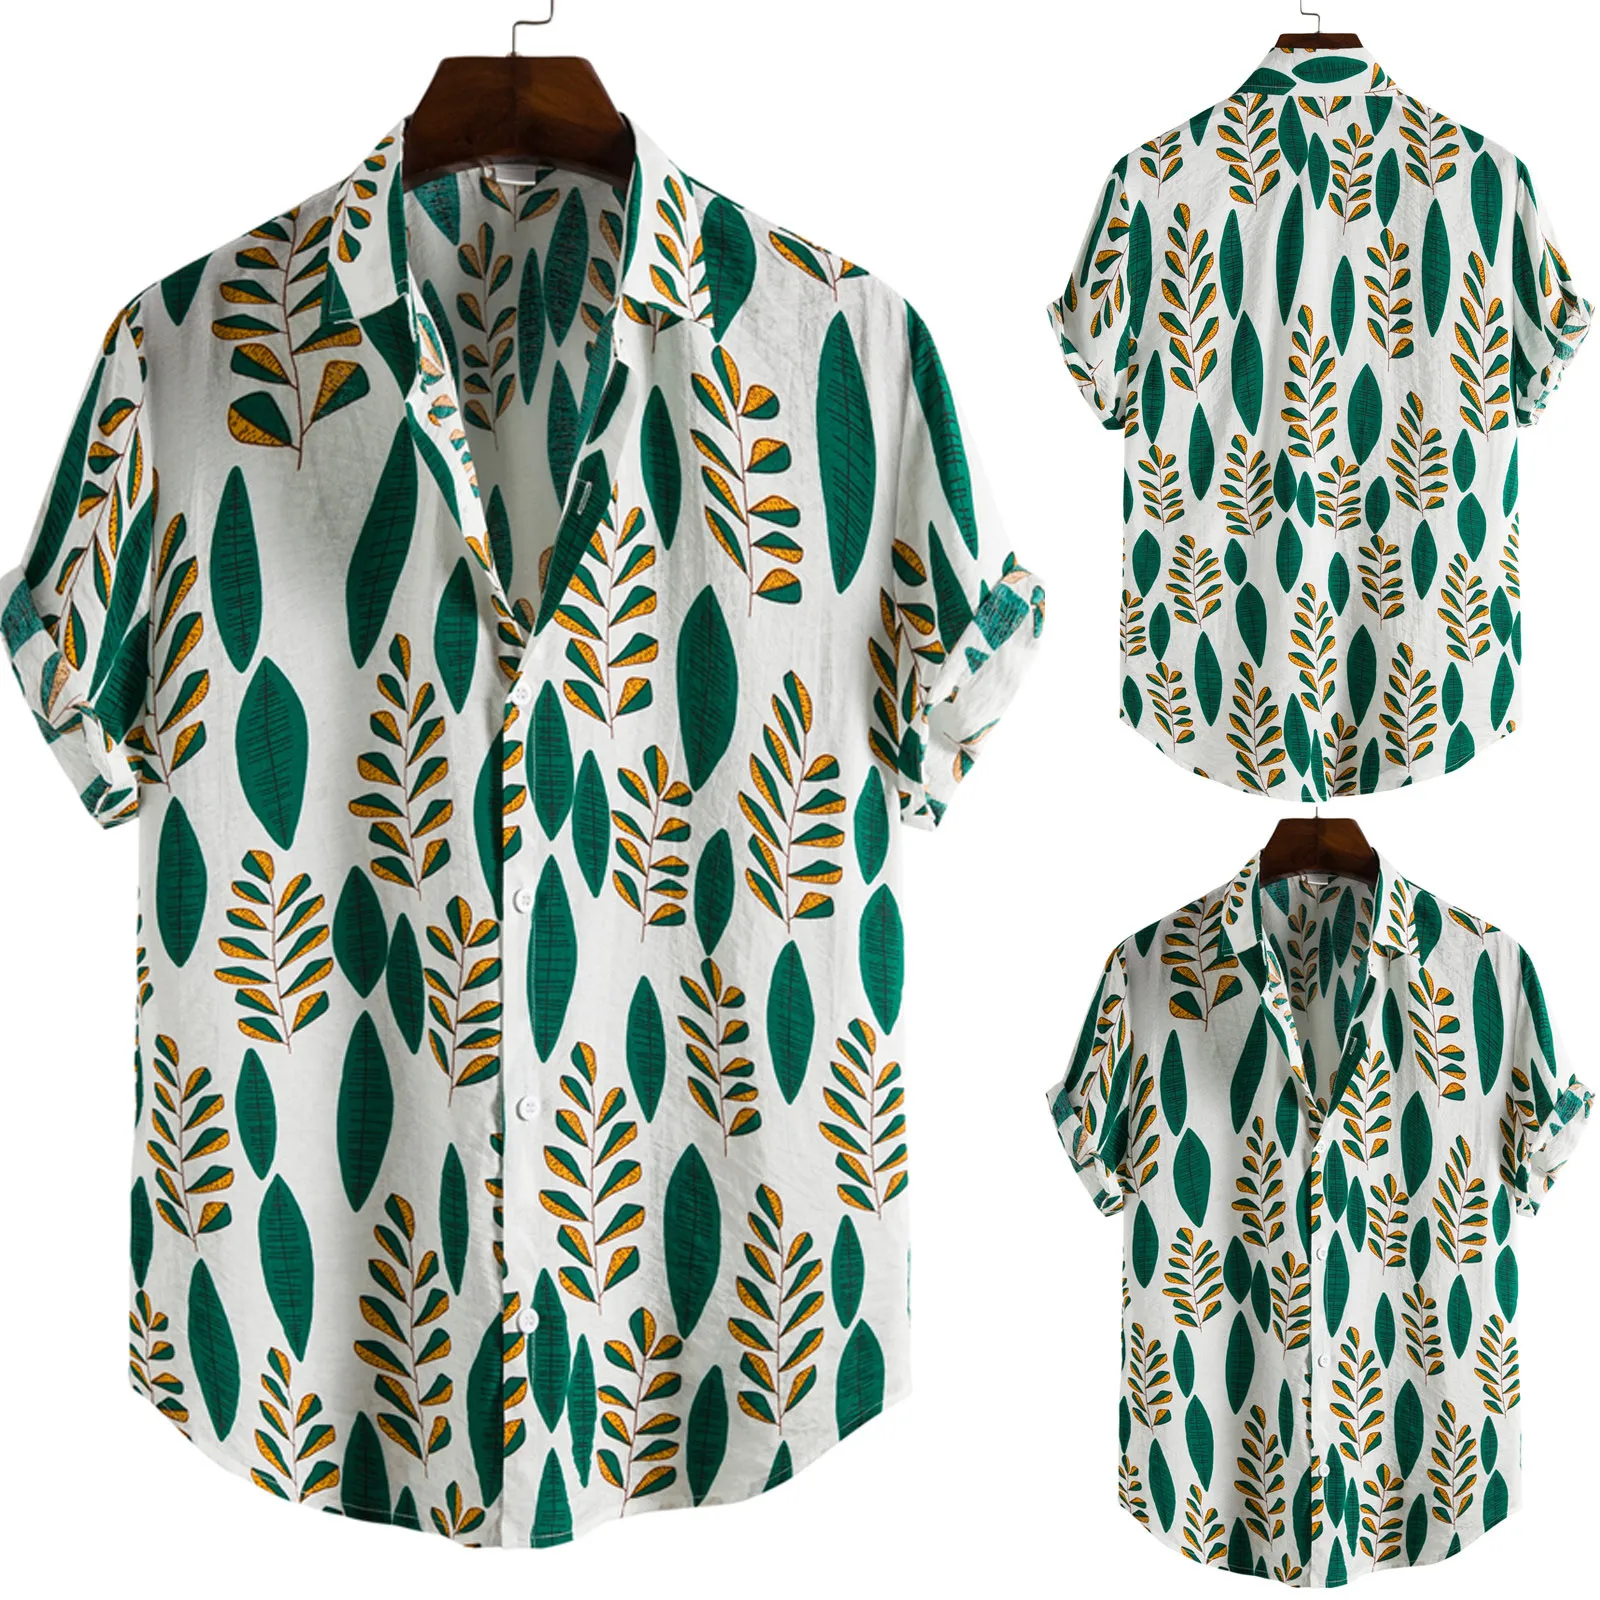 

Гавайская блузка рубашка с коротким рукавом, модная сорочка в этническом стиле, с принтом в повседневном стиле, мужская одежда